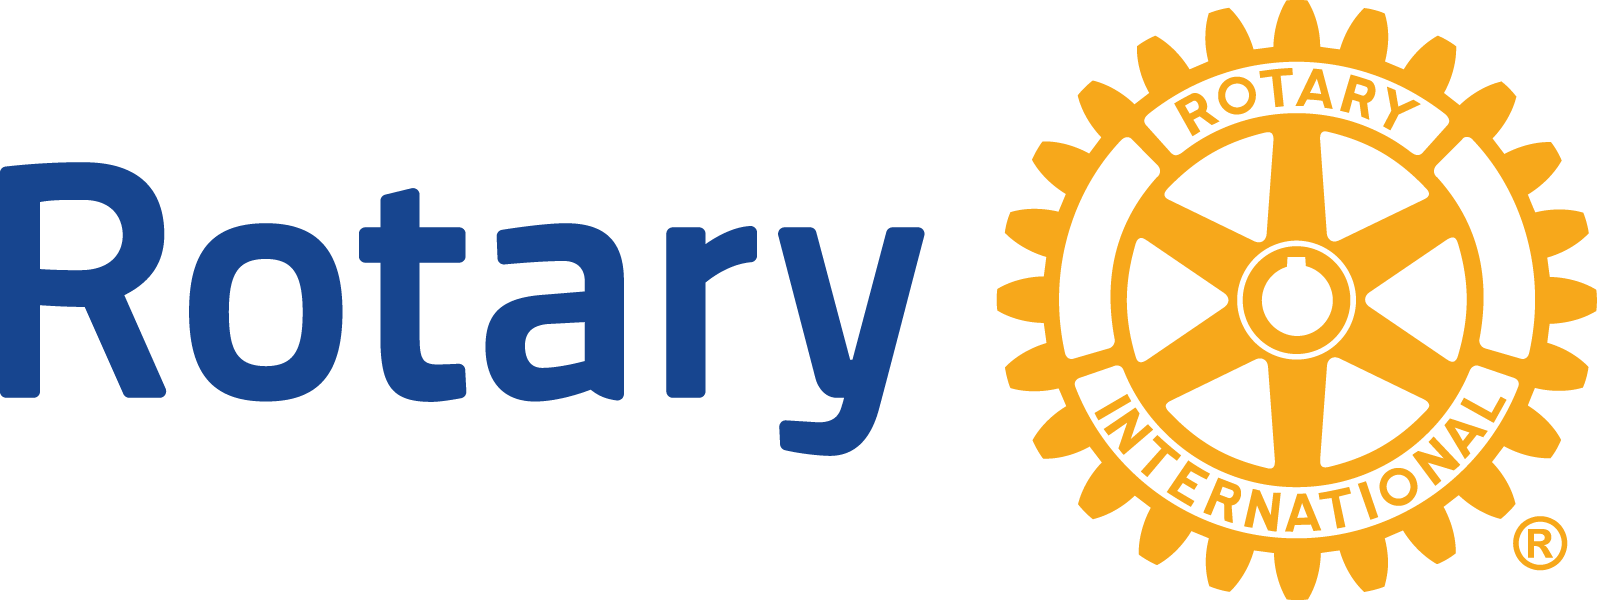 Albury West logo